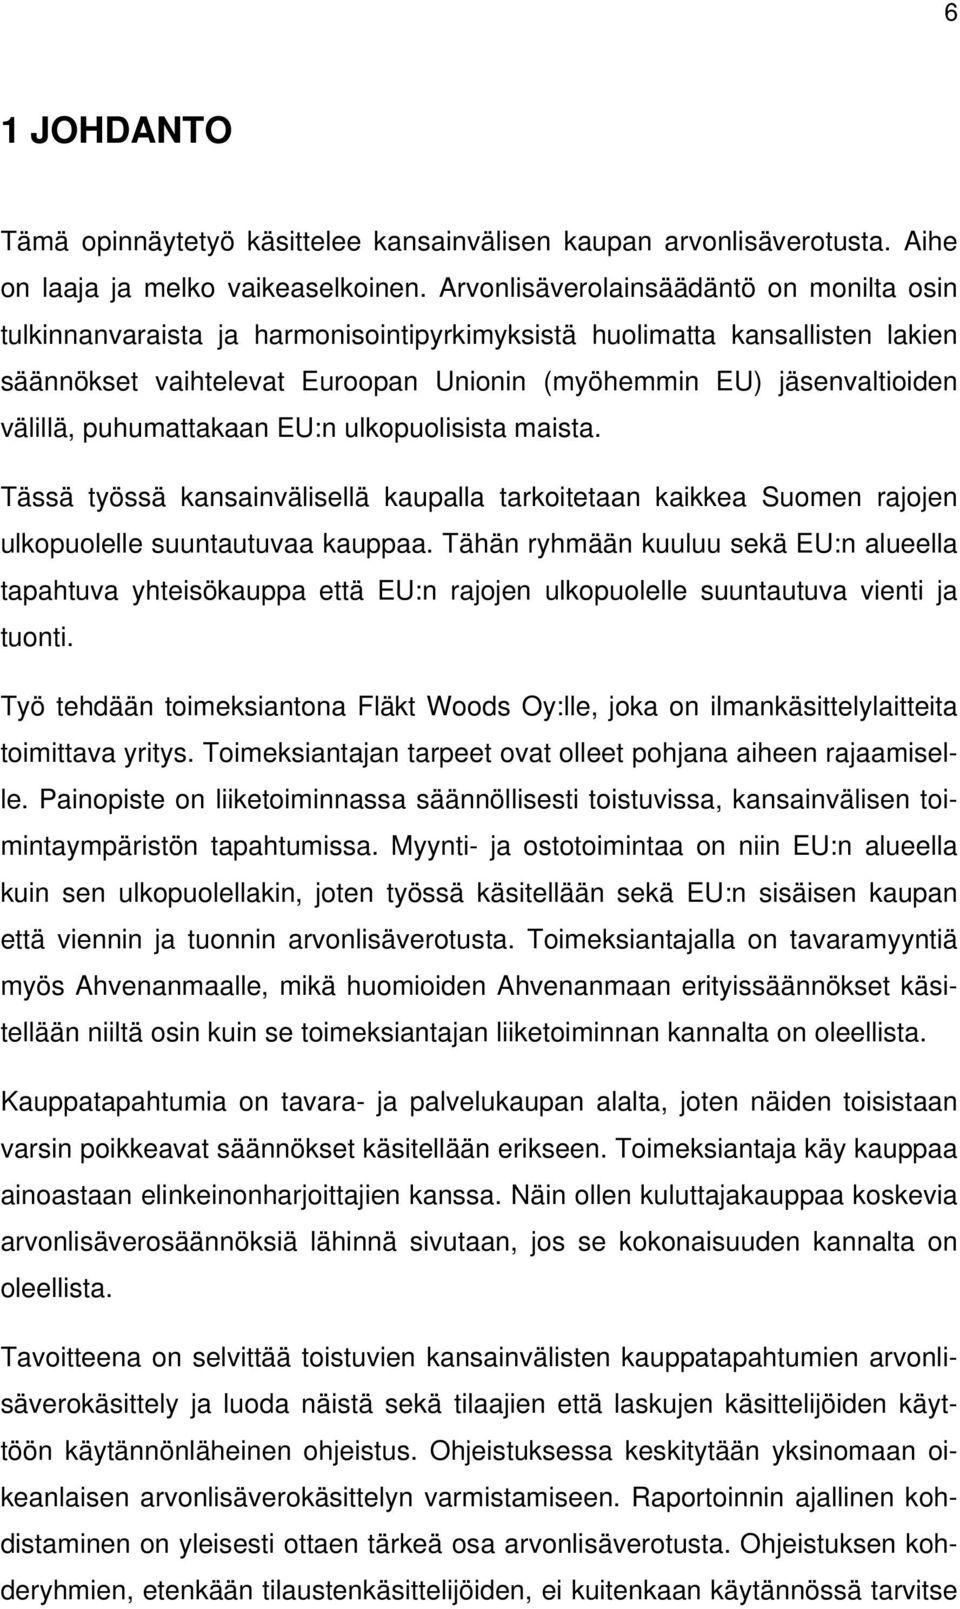 välillä, puhumattakaan EU:n ulkopuolisista maista. Tässä työssä kansainvälisellä kaupalla tarkoitetaan kaikkea Suomen rajojen ulkopuolelle suuntautuvaa kauppaa.